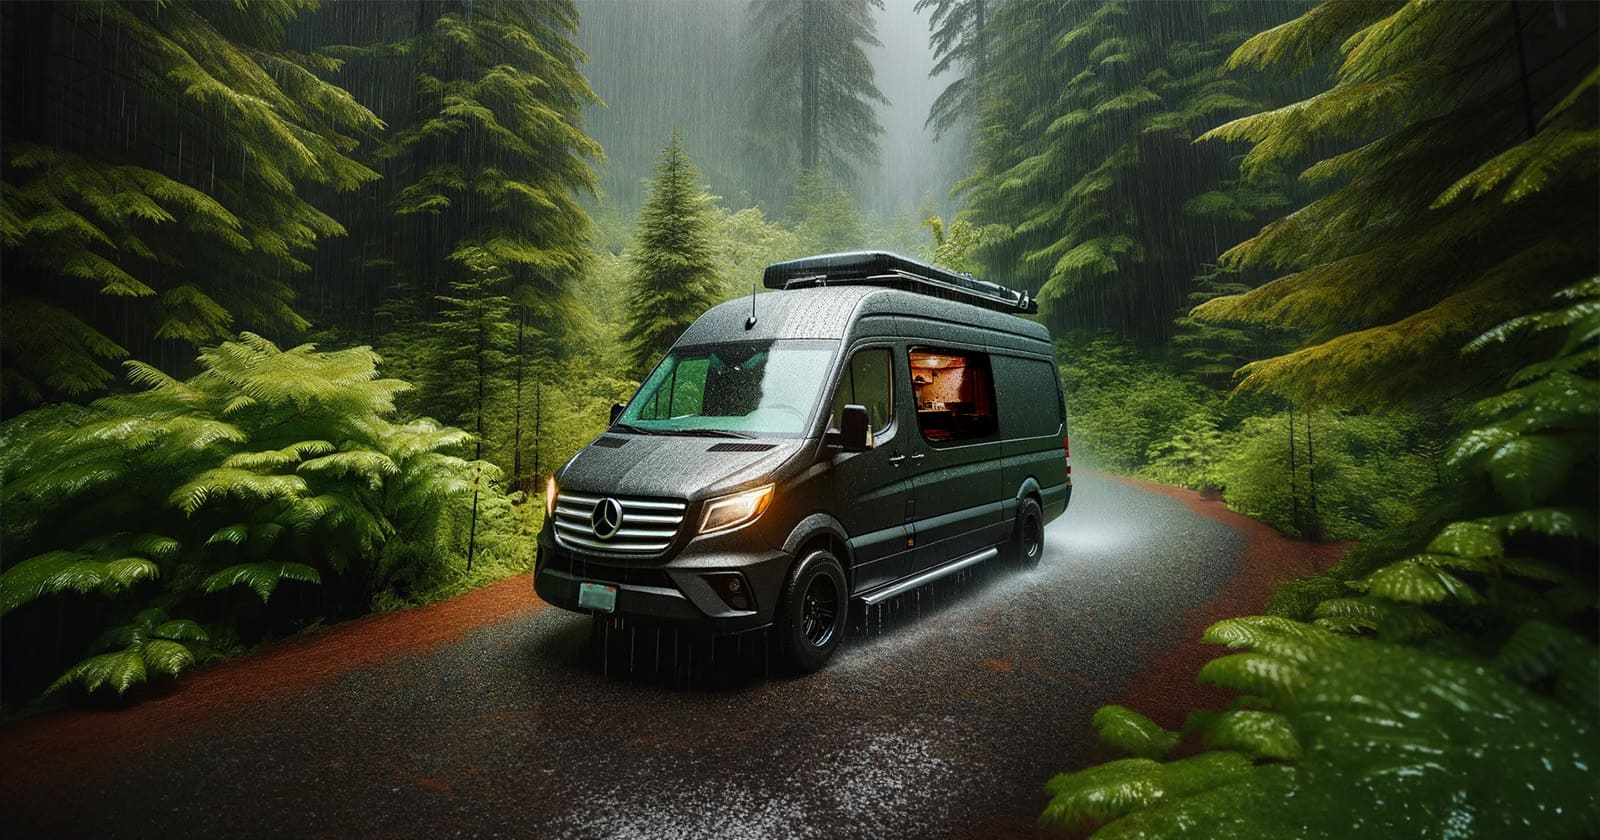 A van camping in the rain